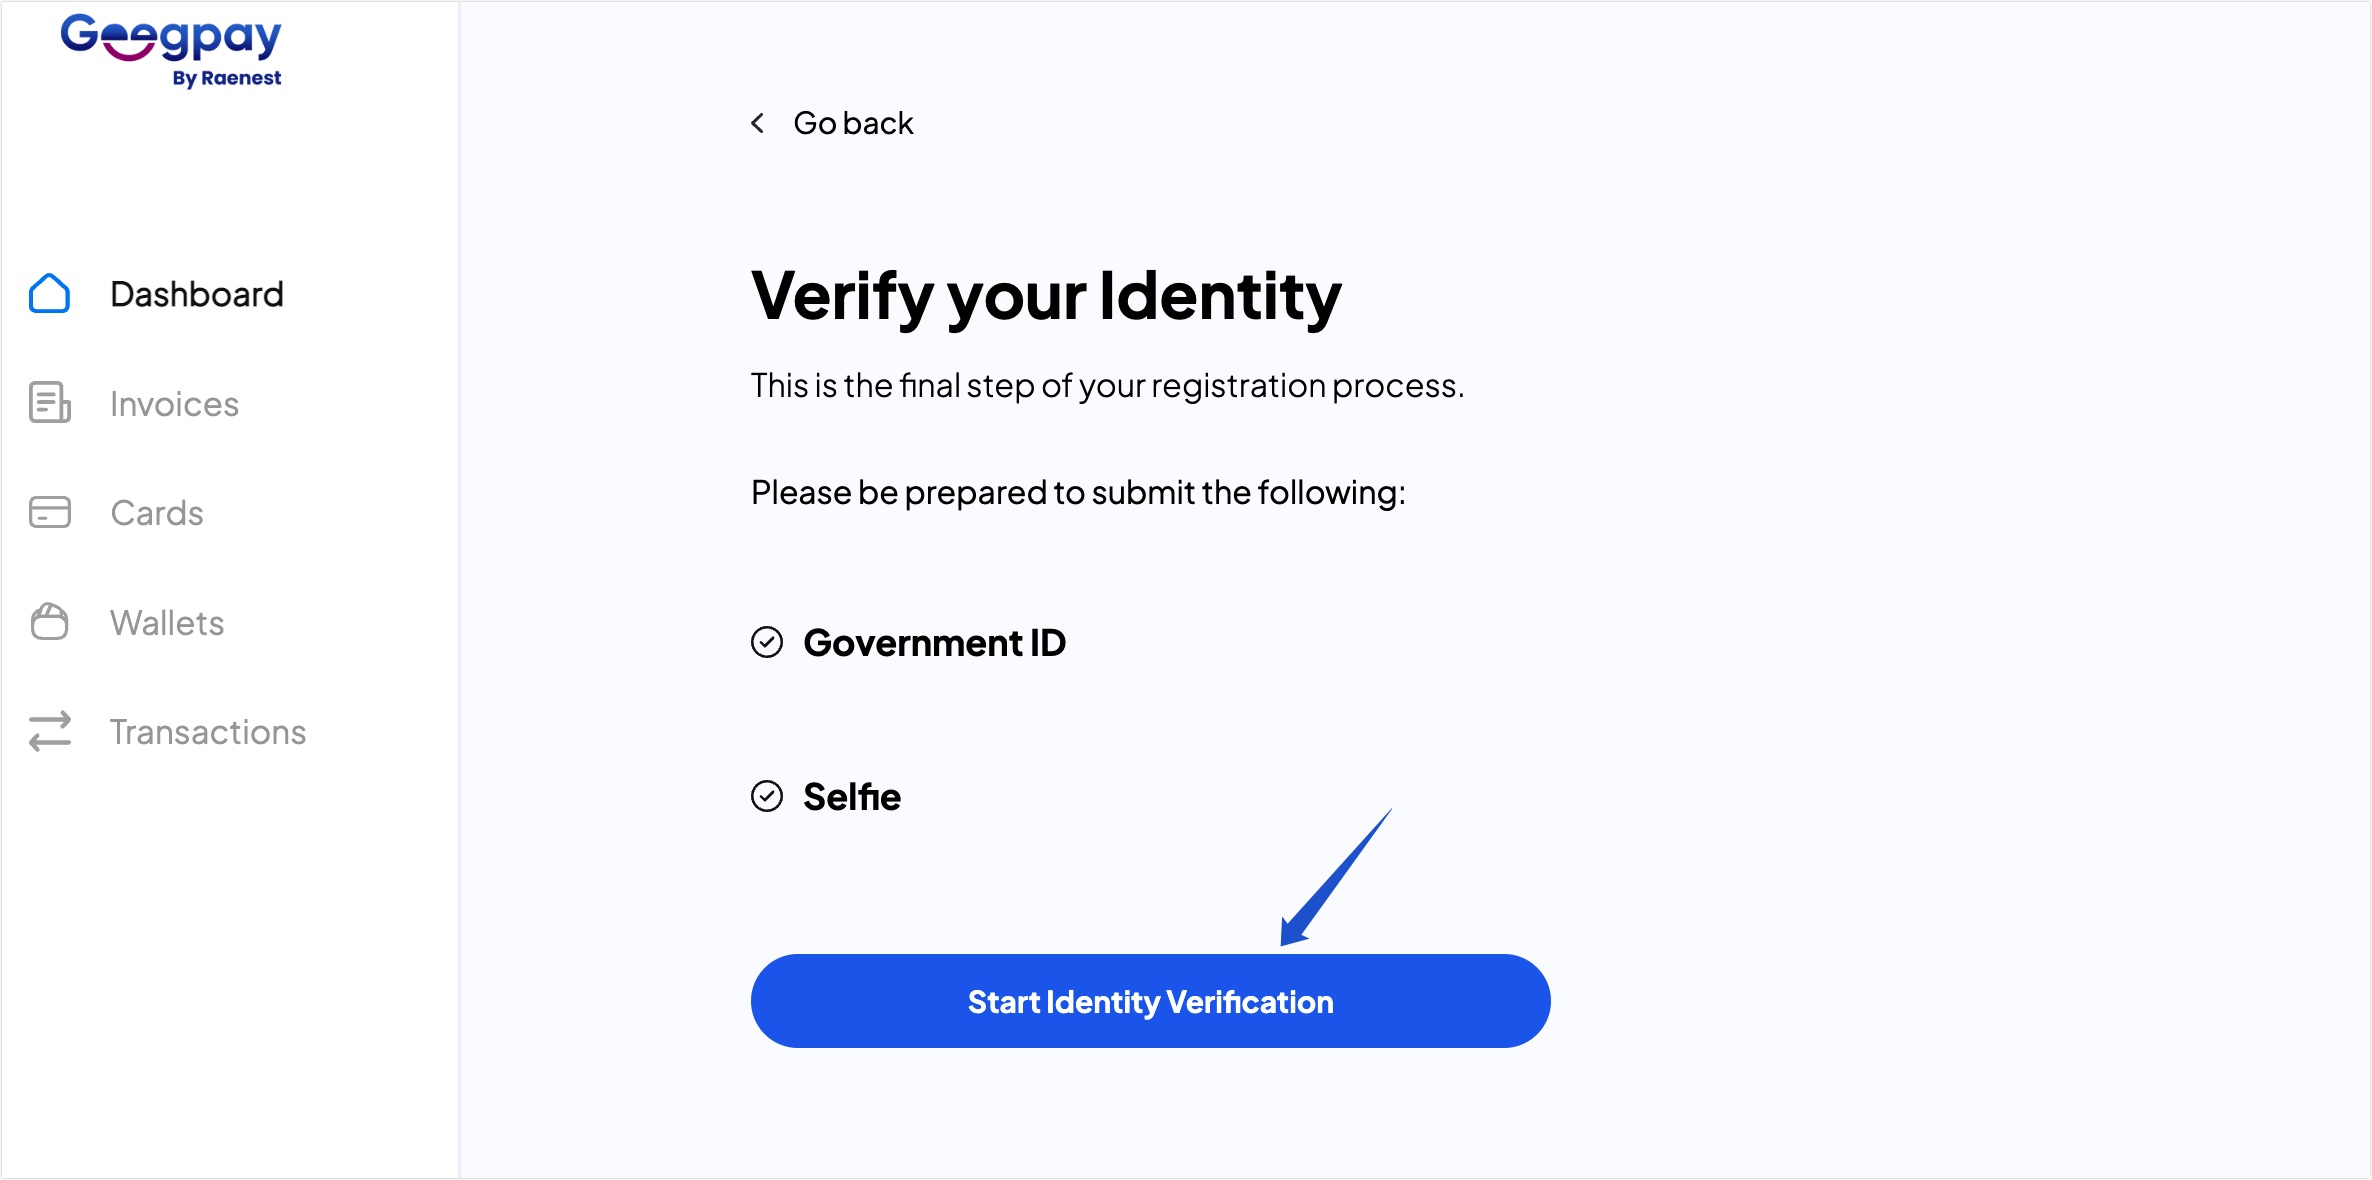 Start identity verification